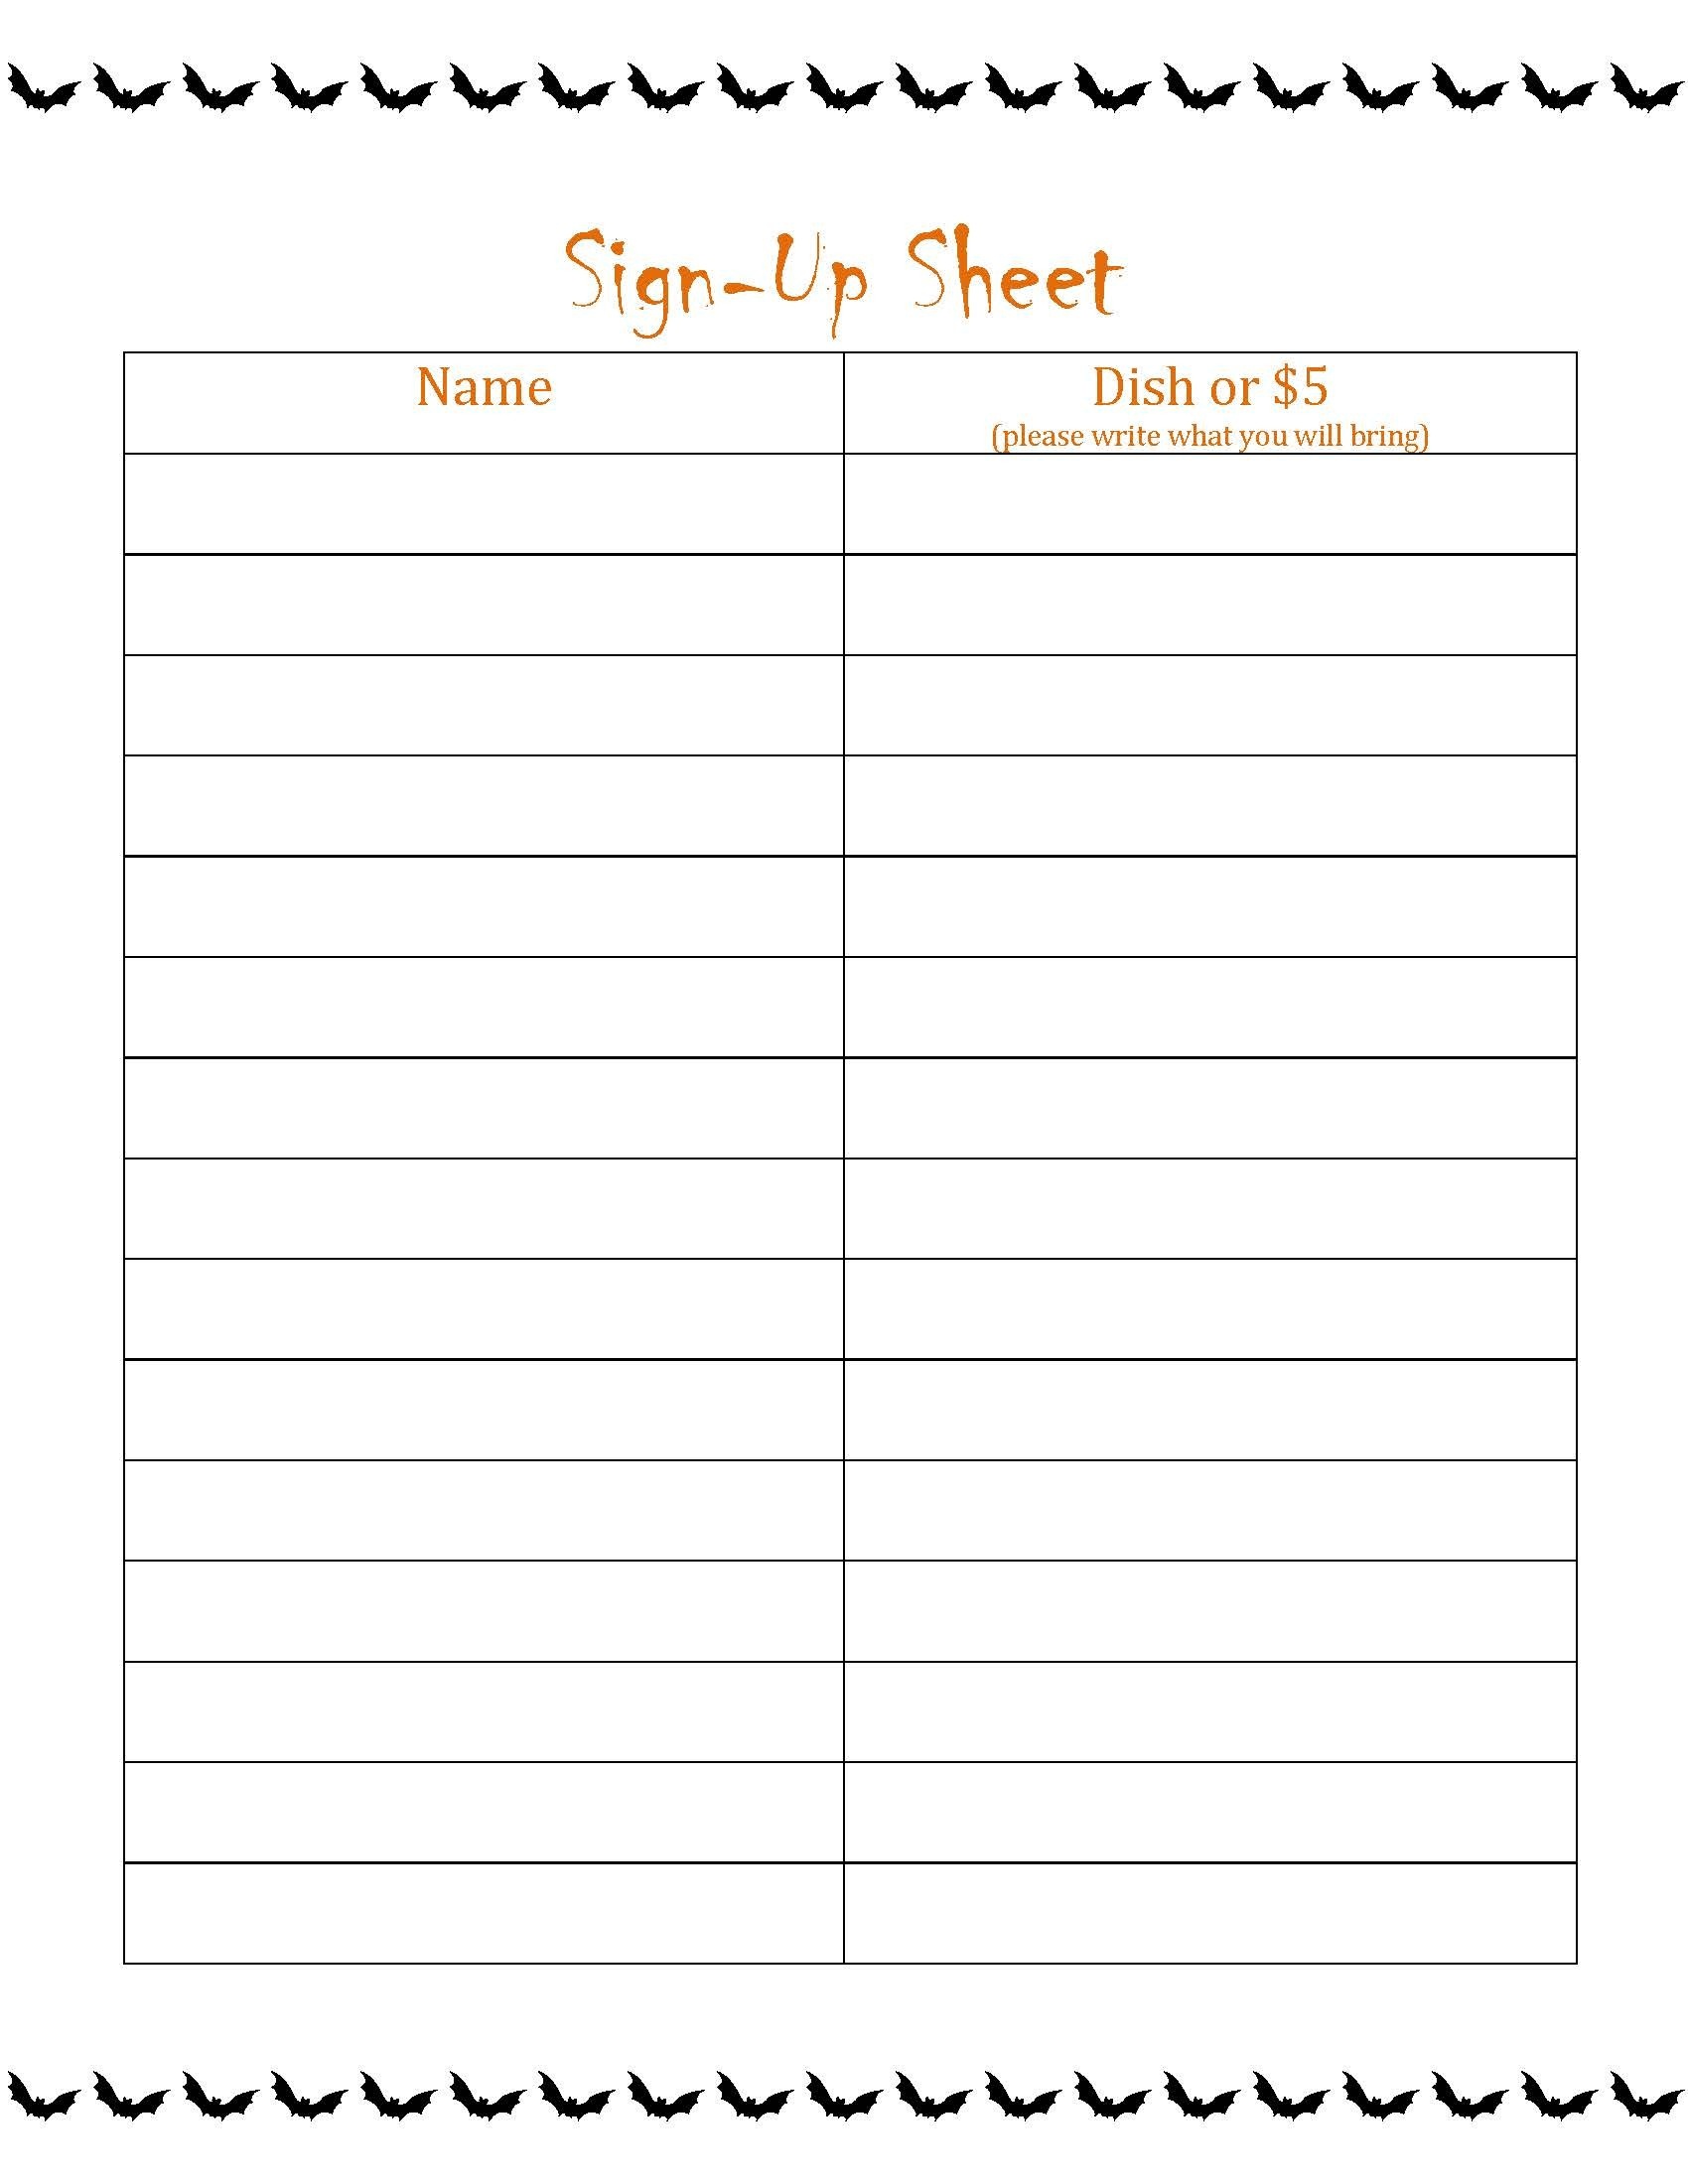 Sign Up Sheet For Potluck Unique Potluck Sign Up Sheet Halloween - Free Printable Sign Up Sheets For Potlucks